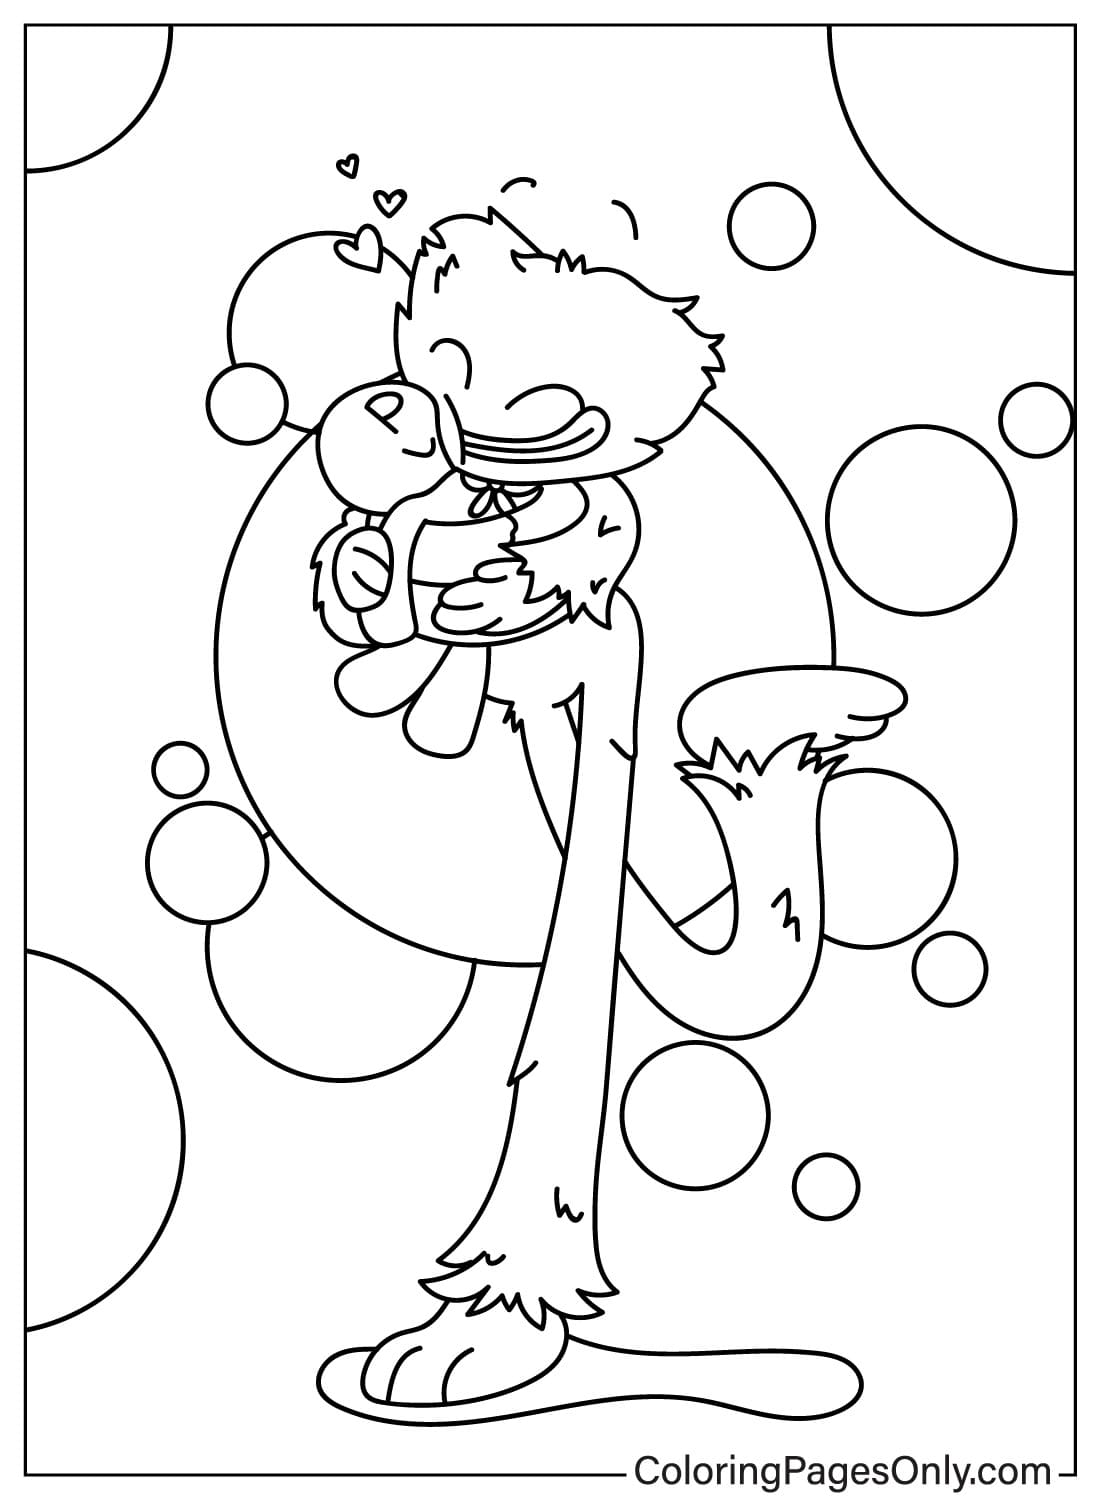 Dibujo para colorear de Huggy Wuggy imprimible gratis de Poppy Playtime